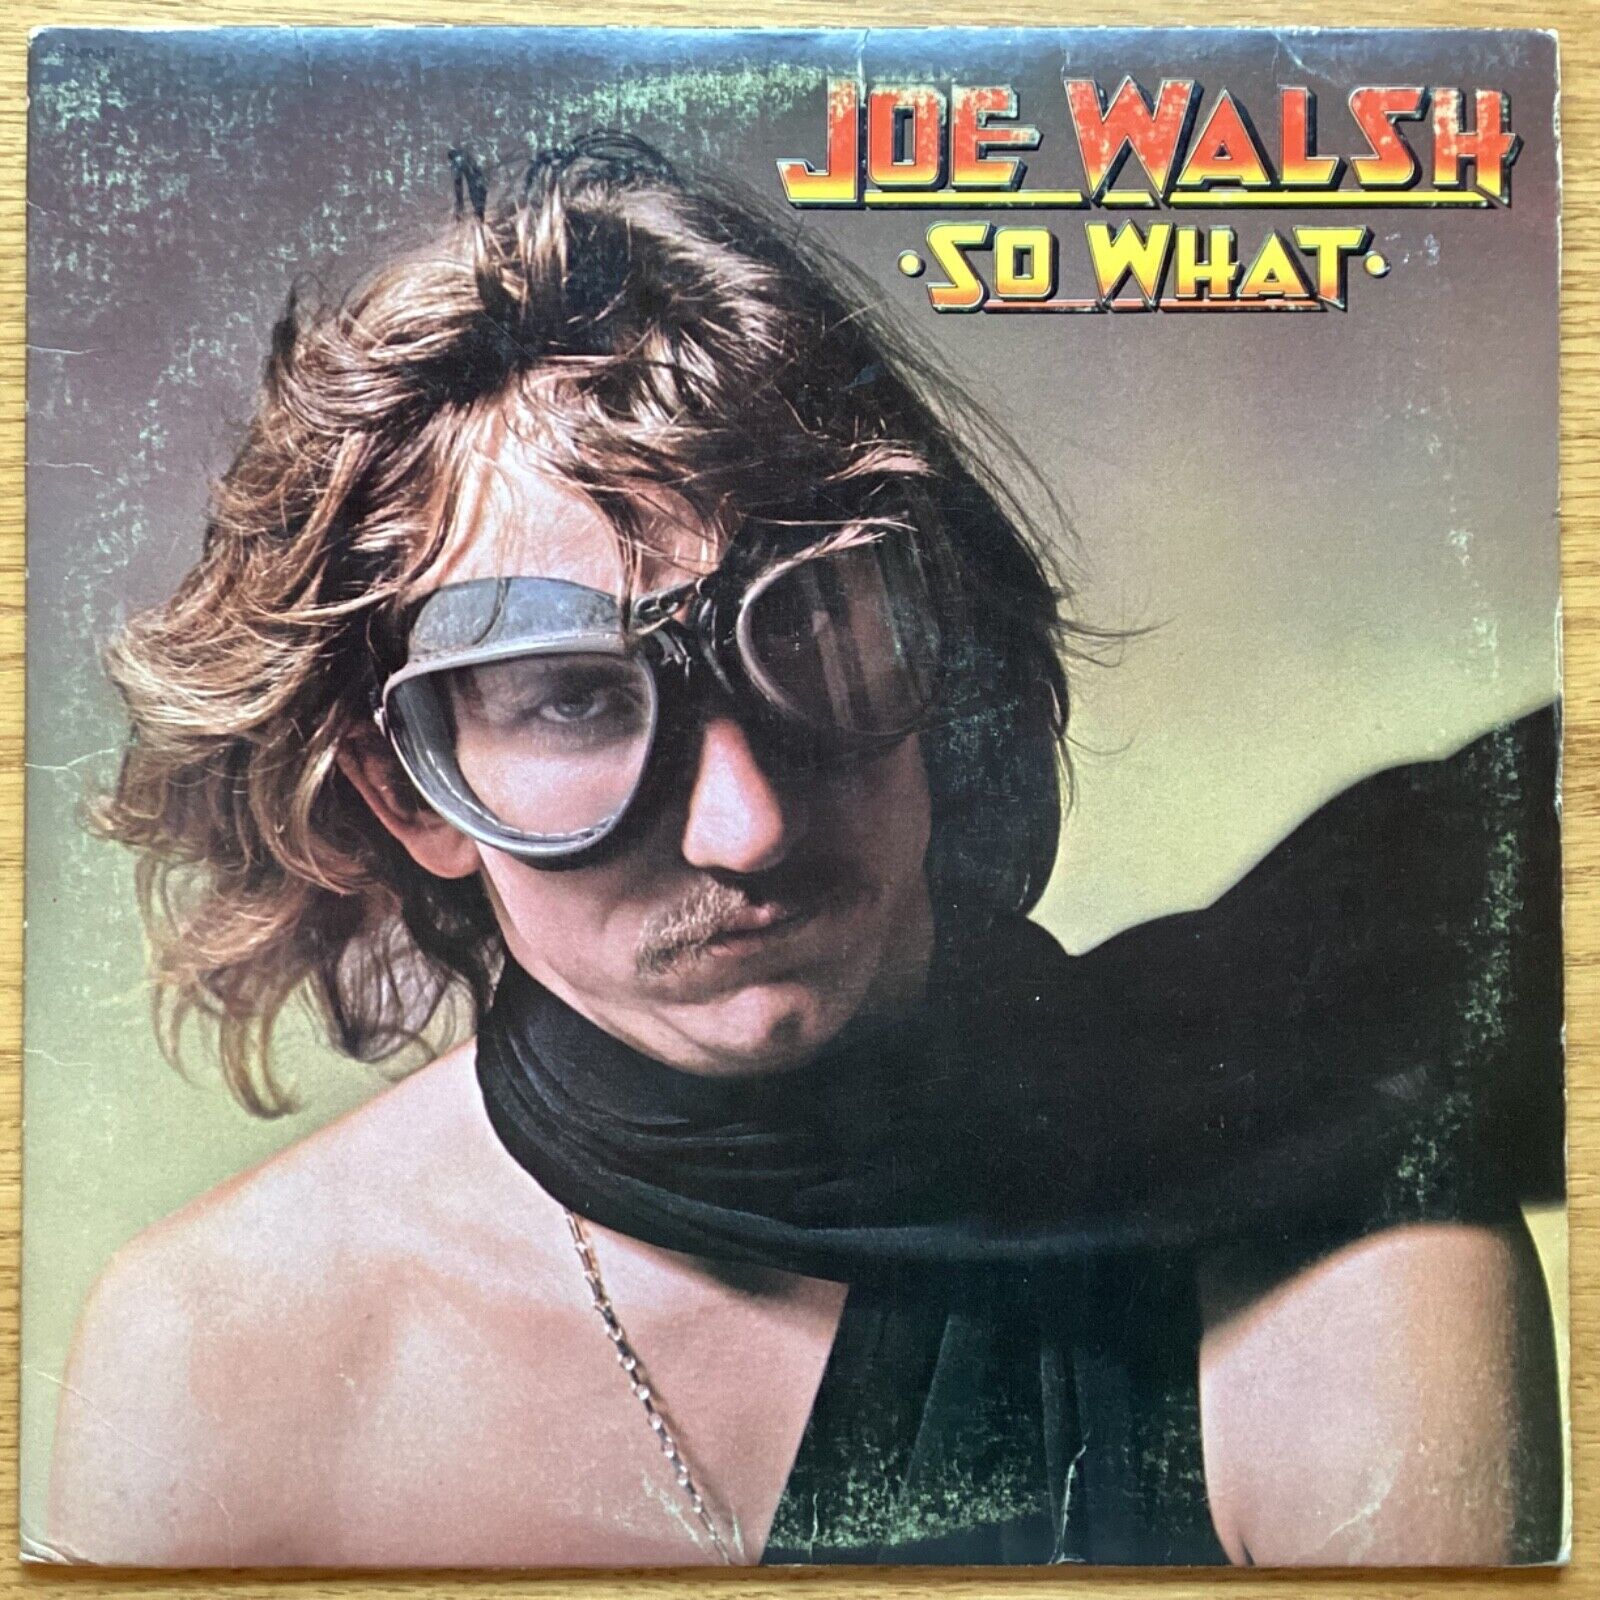 Joe Walsh “So What" 33 1/3 rpm LP, DSD-50171